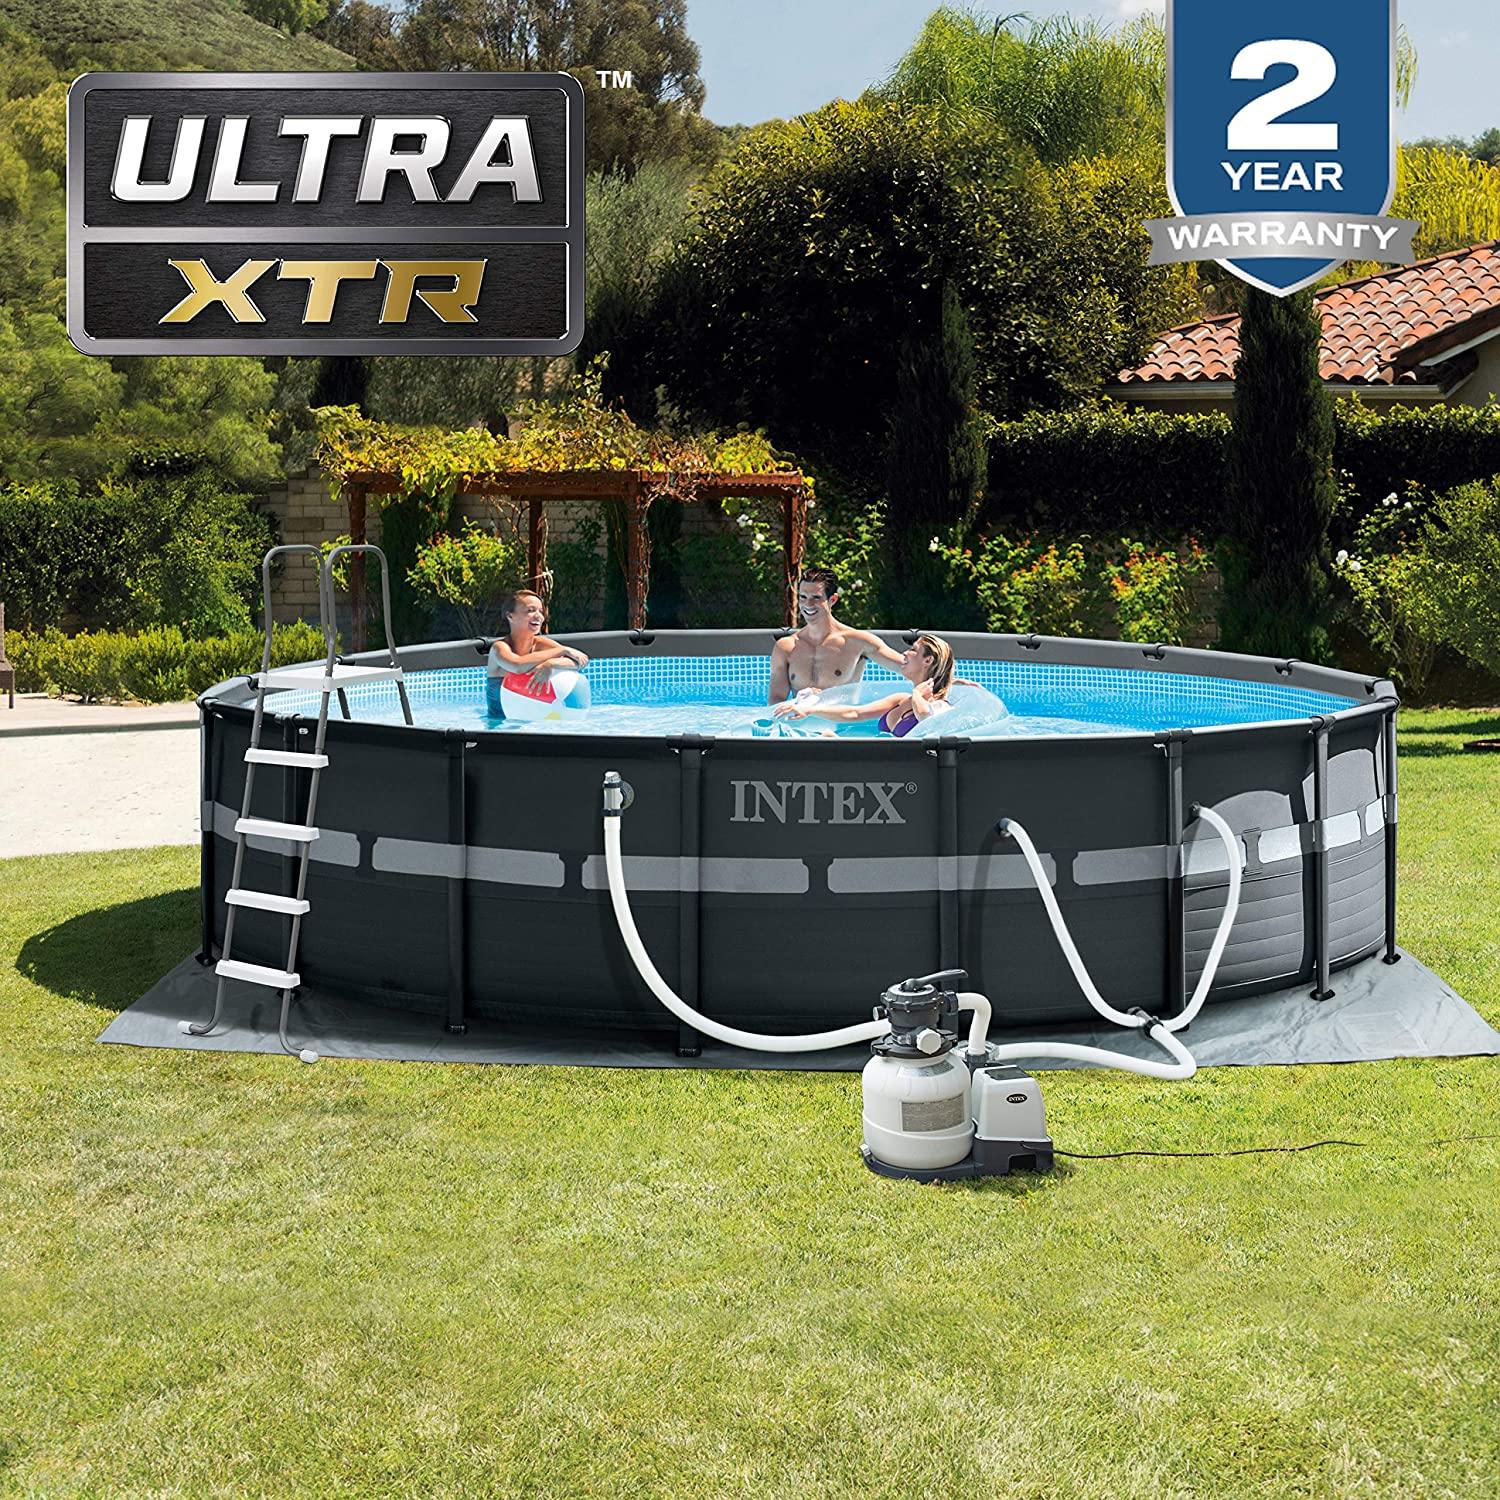 Intex Ultra XTR Pool 18x52 - Pelican Shops